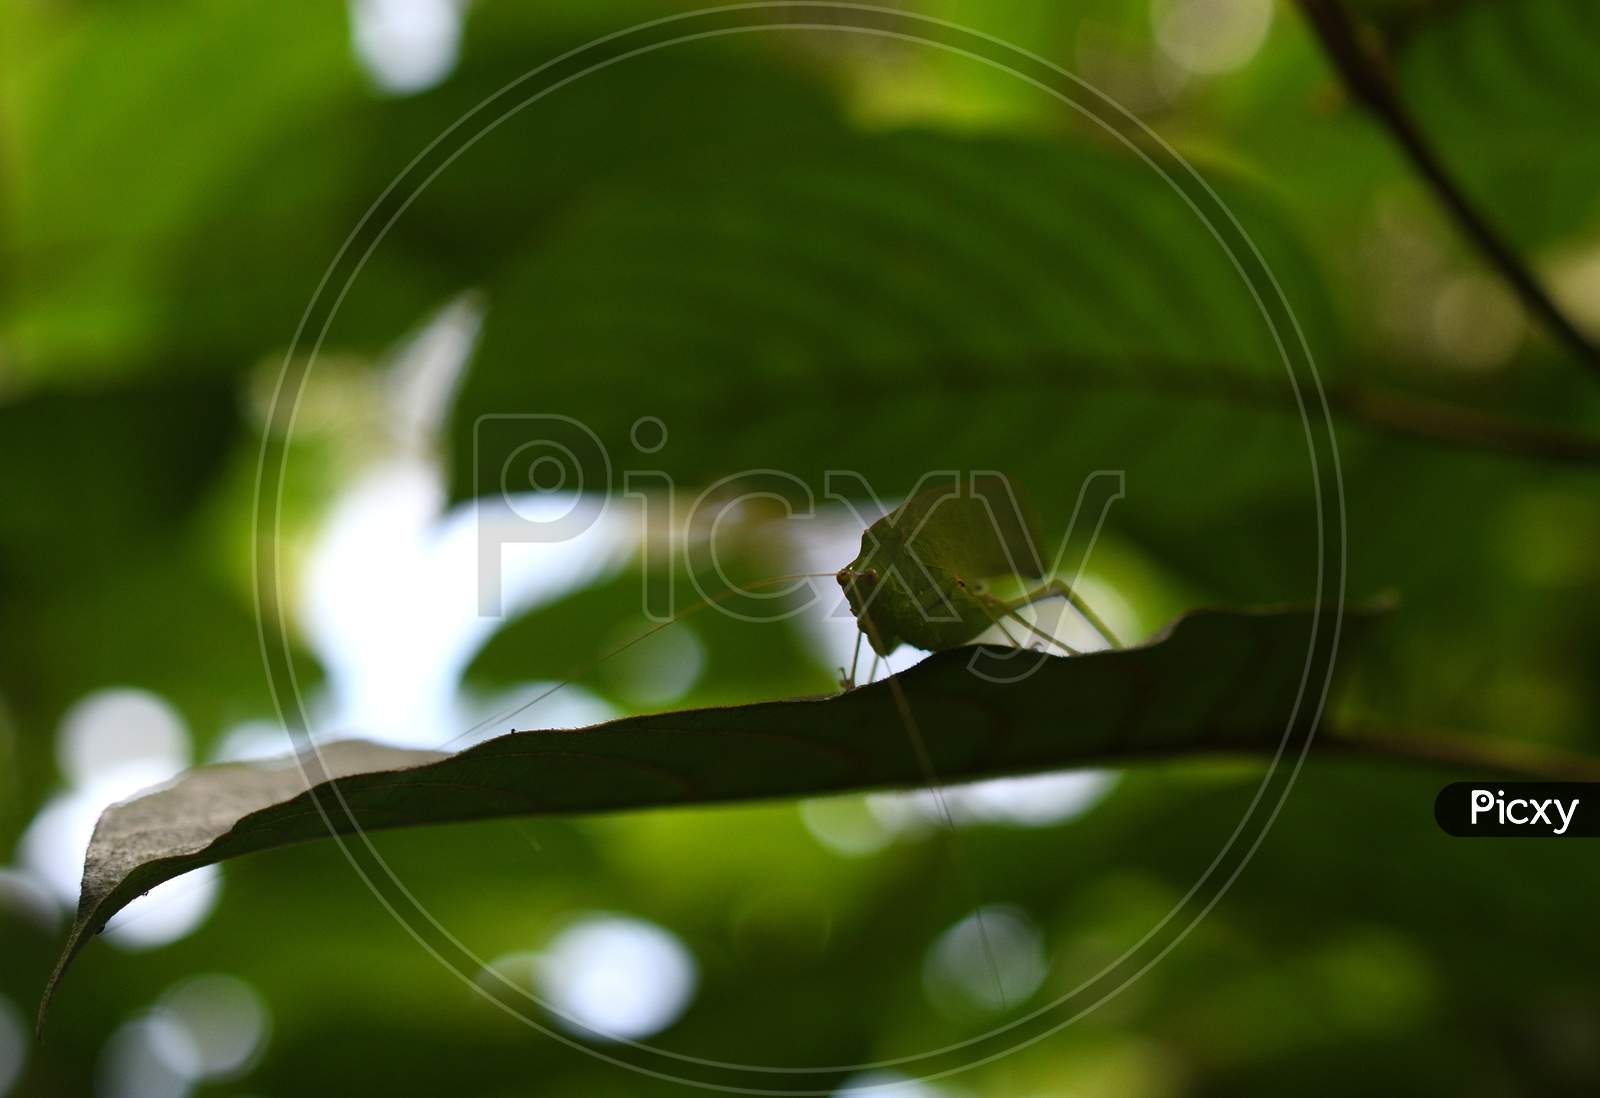 Grasshopper In A Blurred Green Background